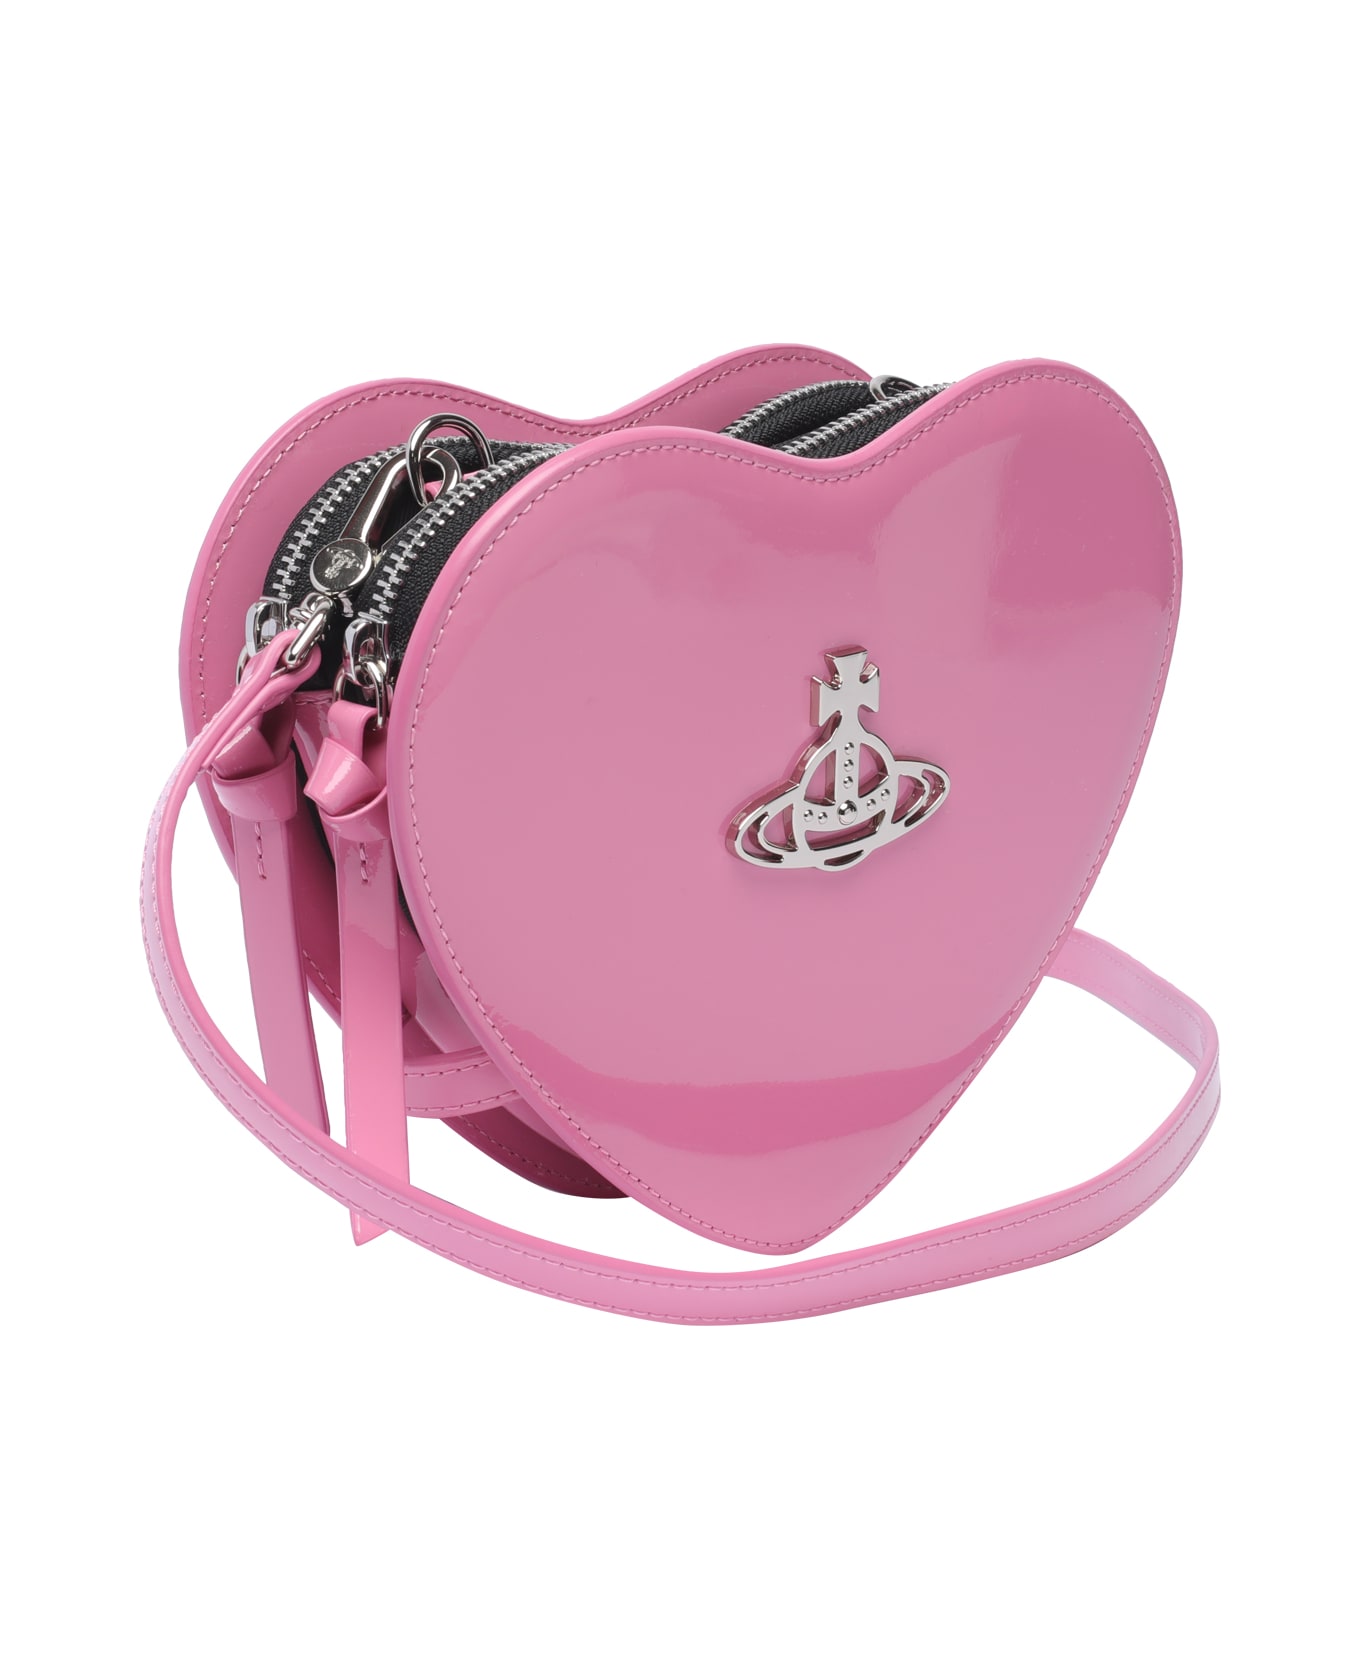 Vivienne Westwood Louise Heart Crossbody Bag - PINK